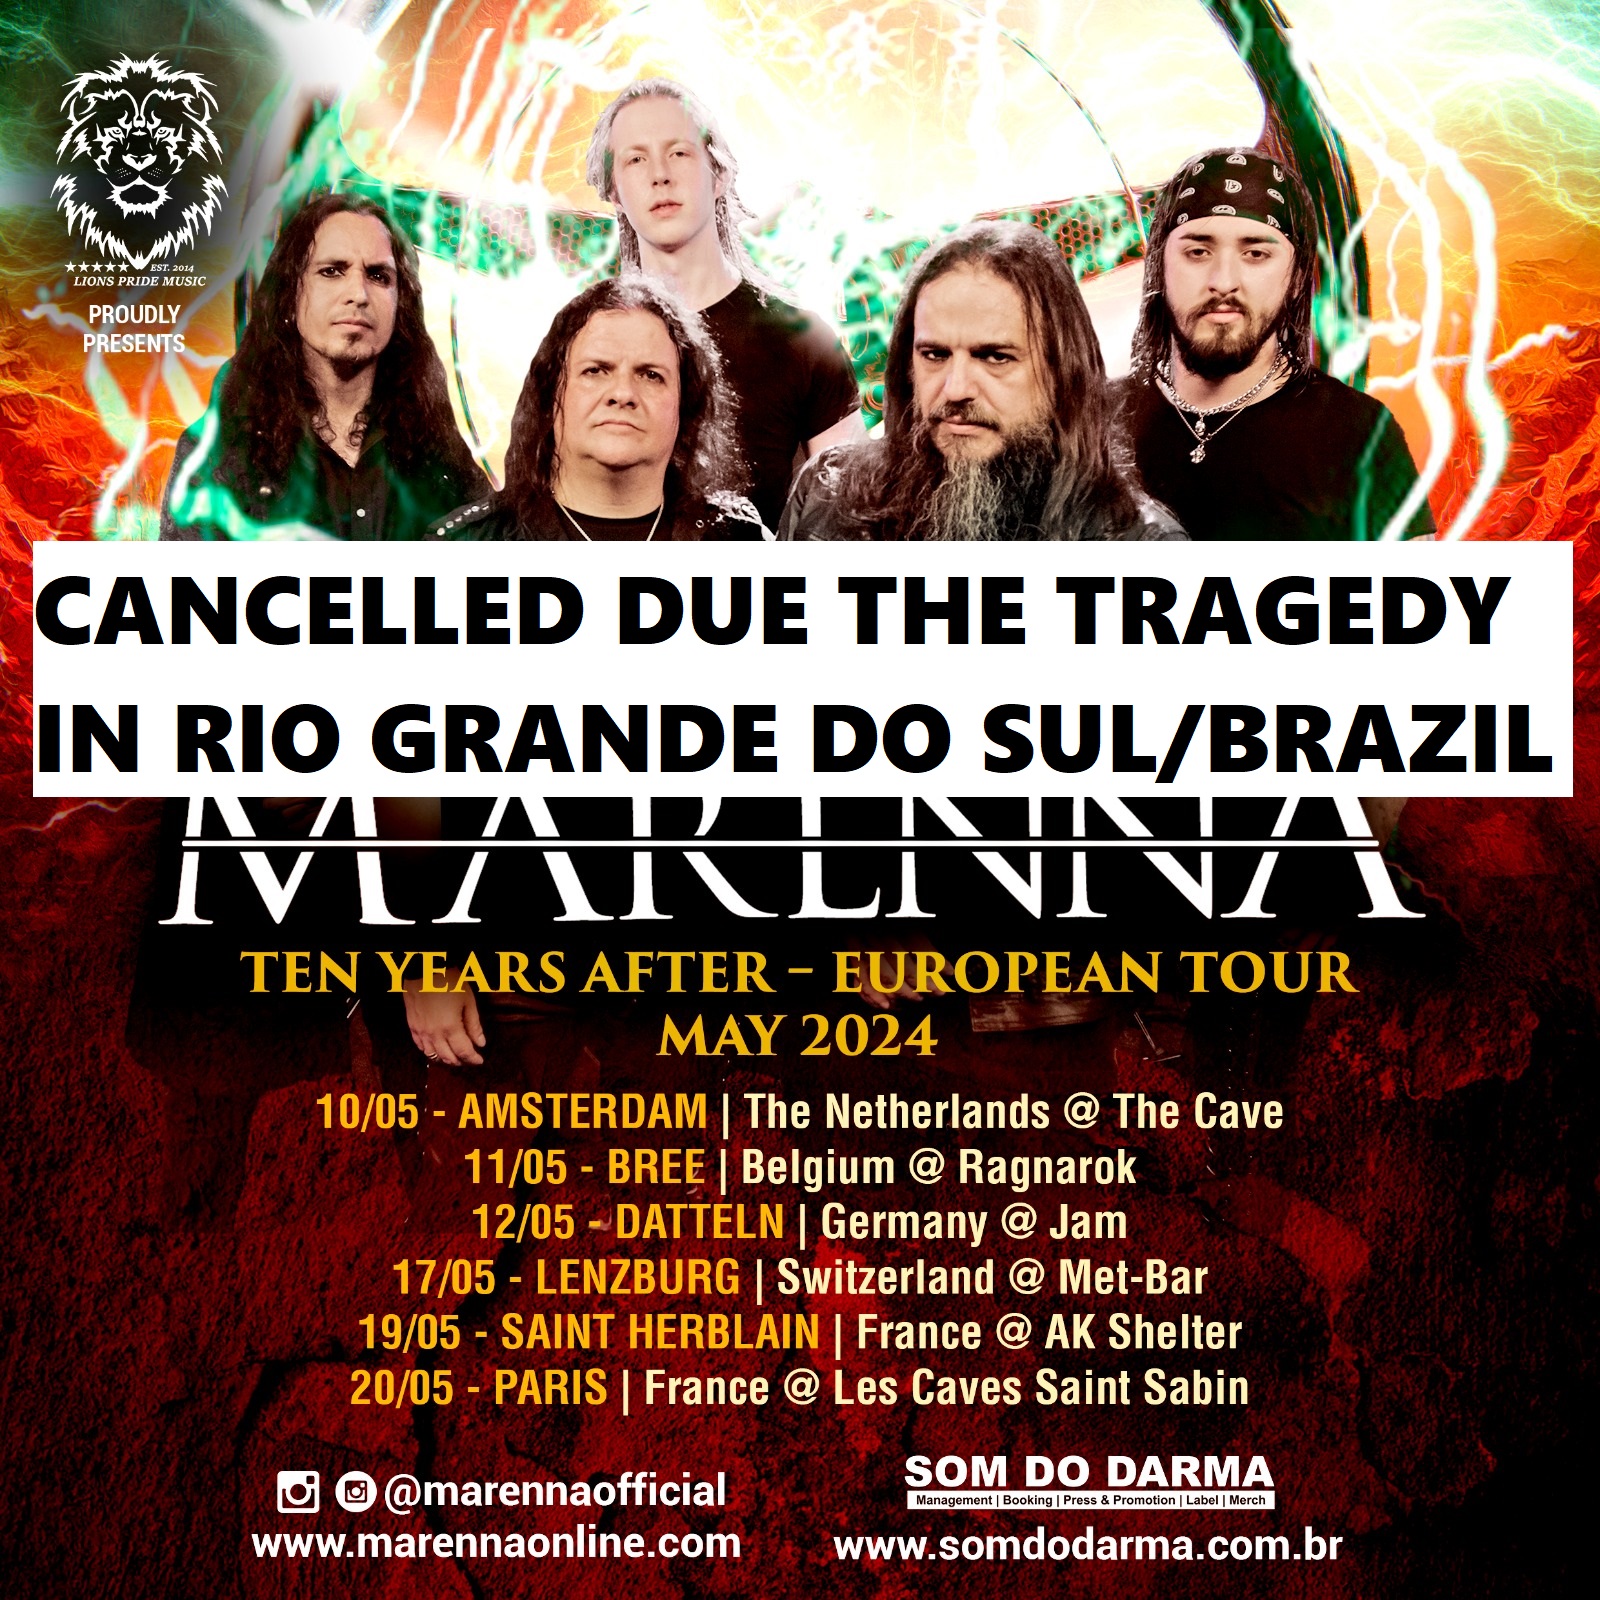 Tragédia no Rio Grande do Sul força Marenna a cancelar sua turnê europeia 